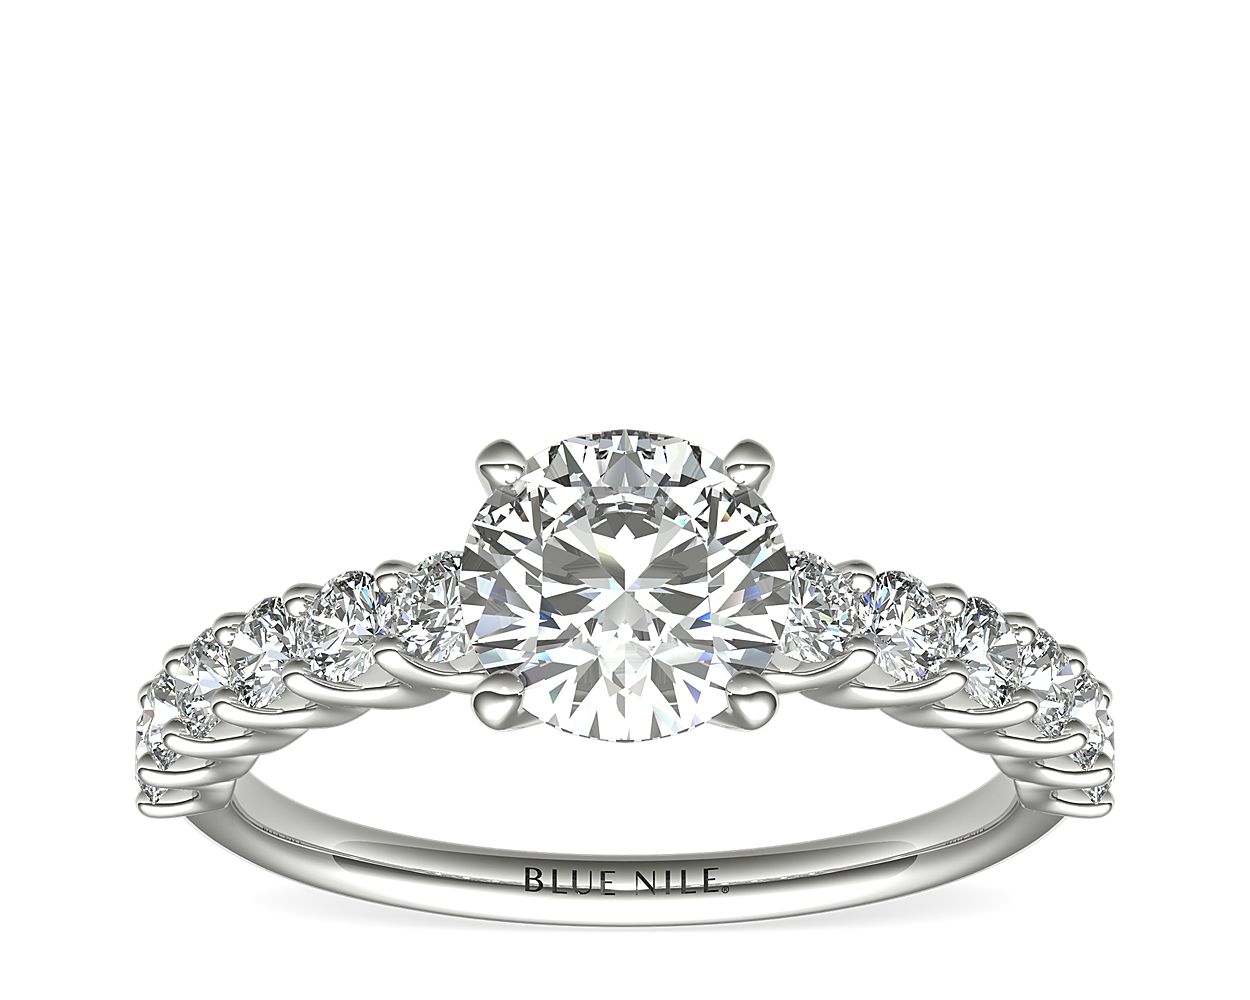 Luna Diamond Engagement Ring in Platinum (1/2 ct. tw.)